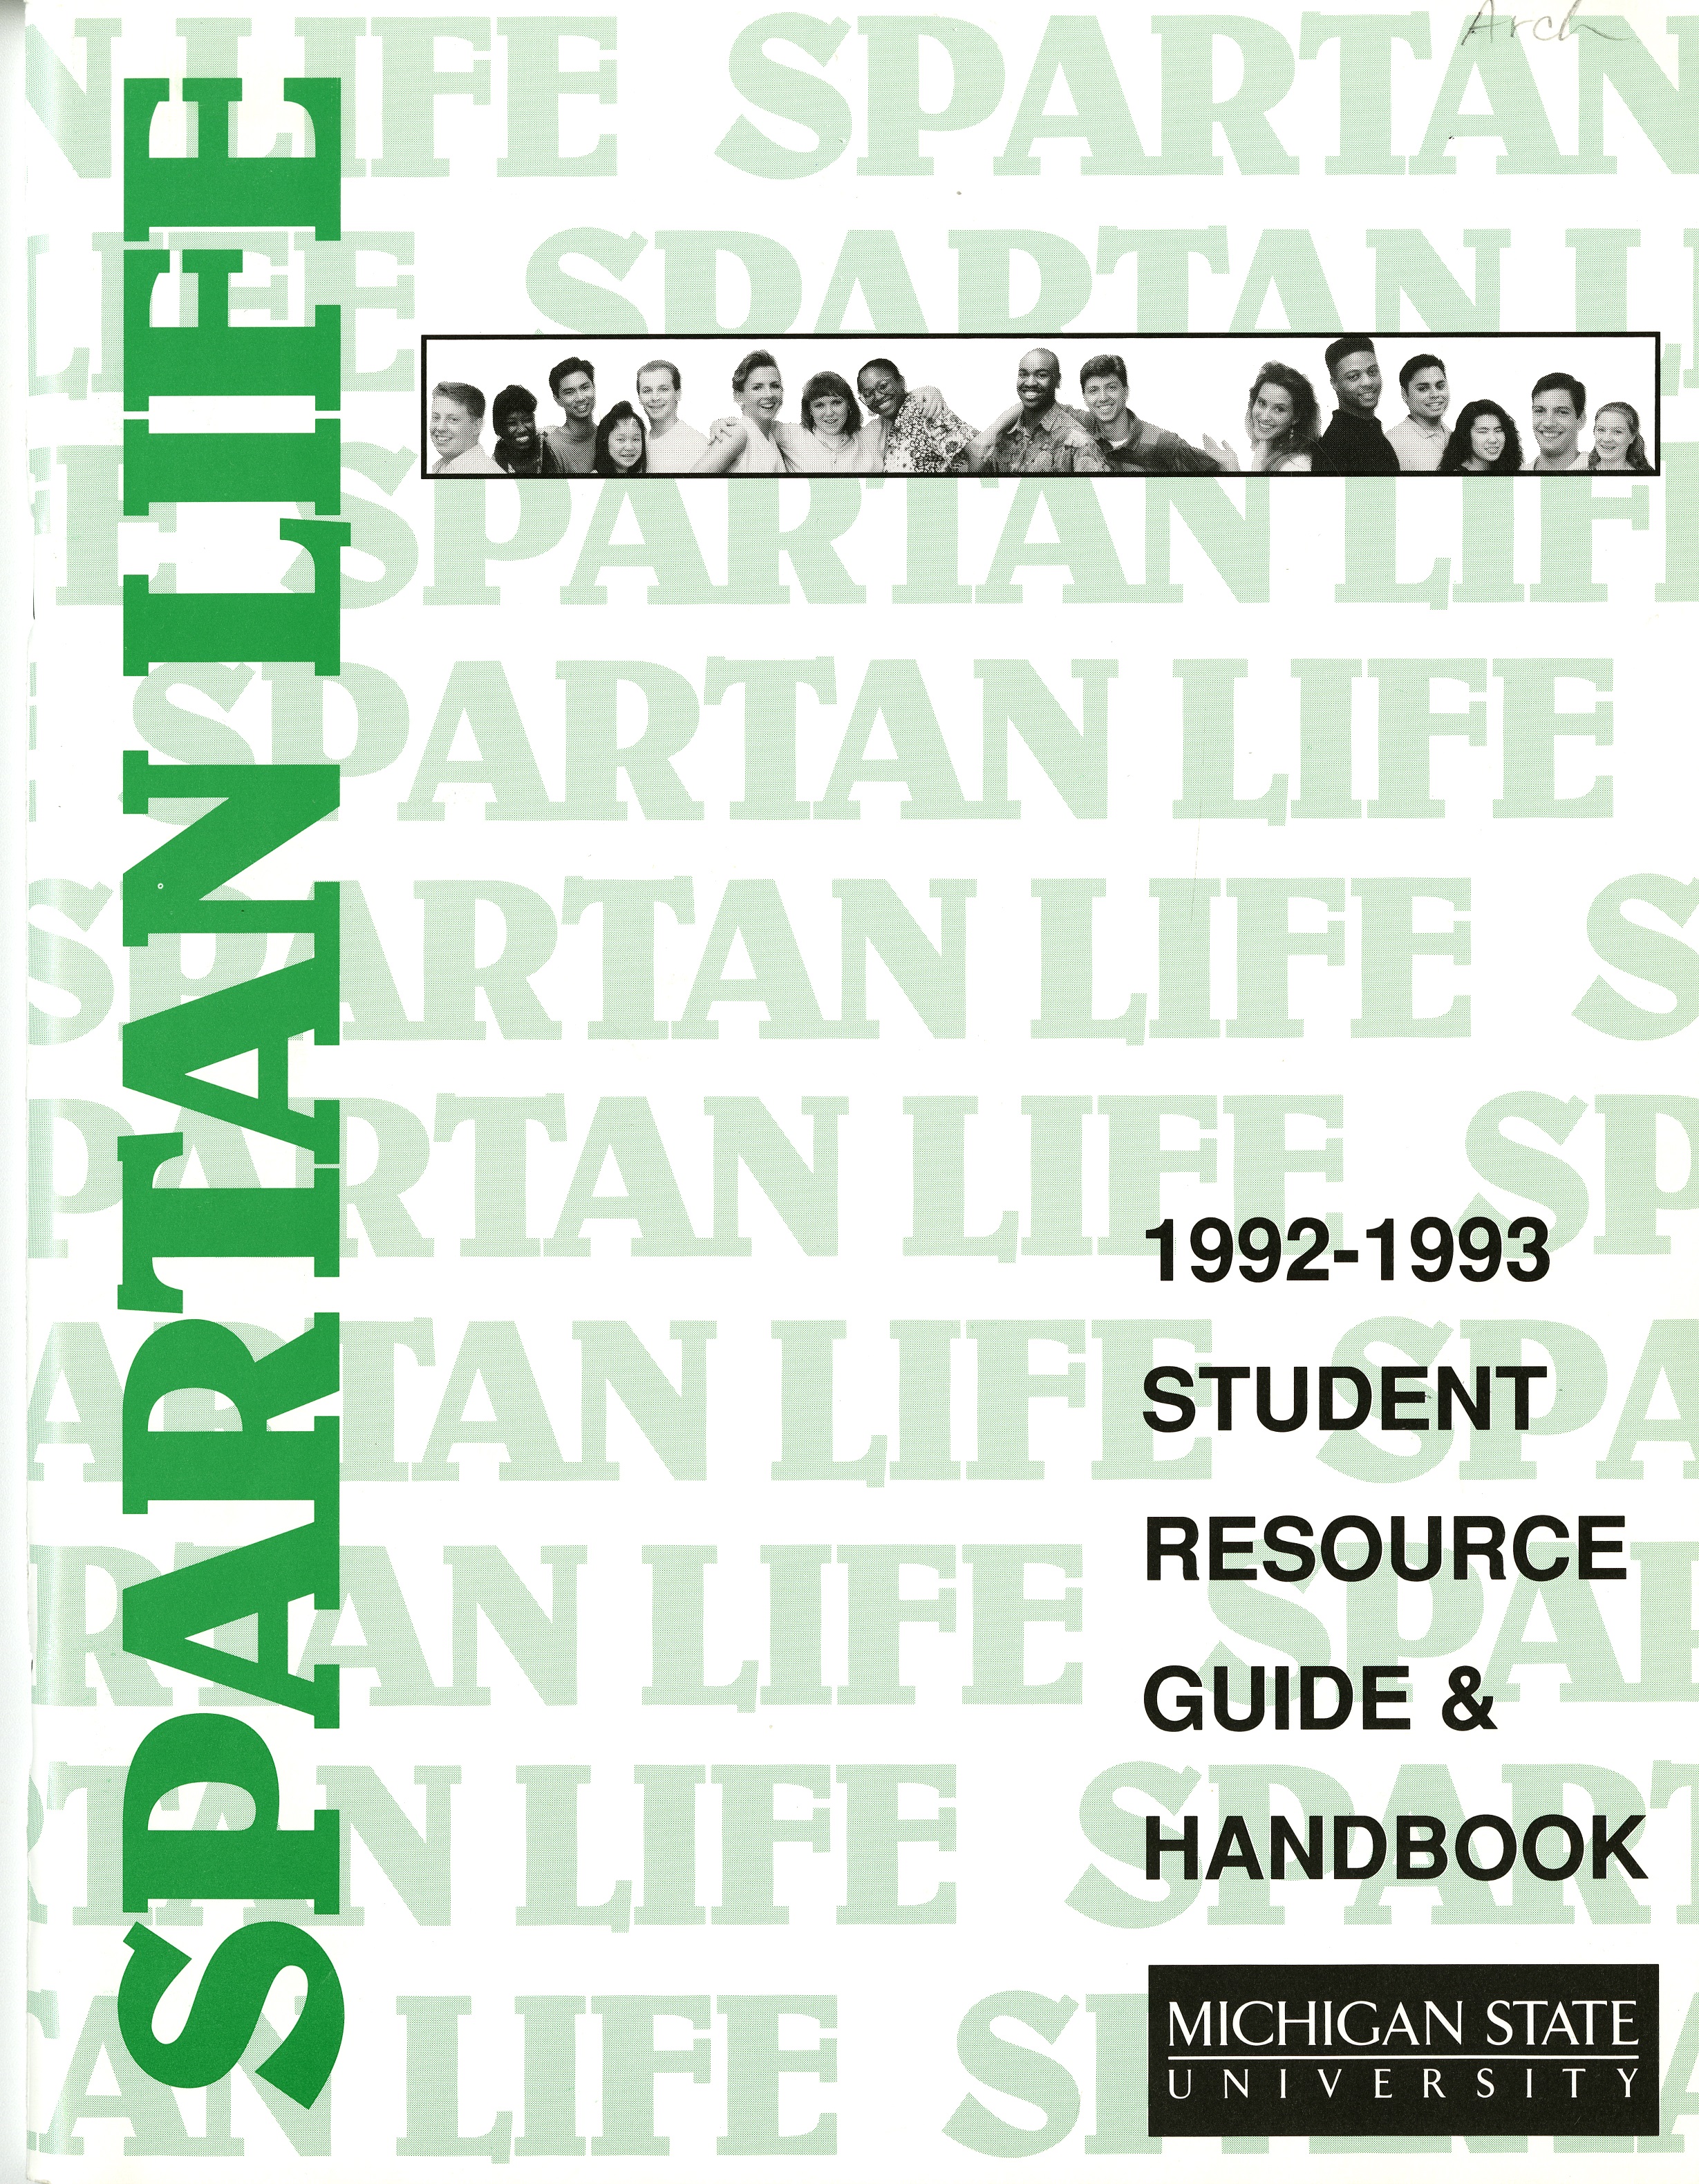 Student Handbook, 1992-1993